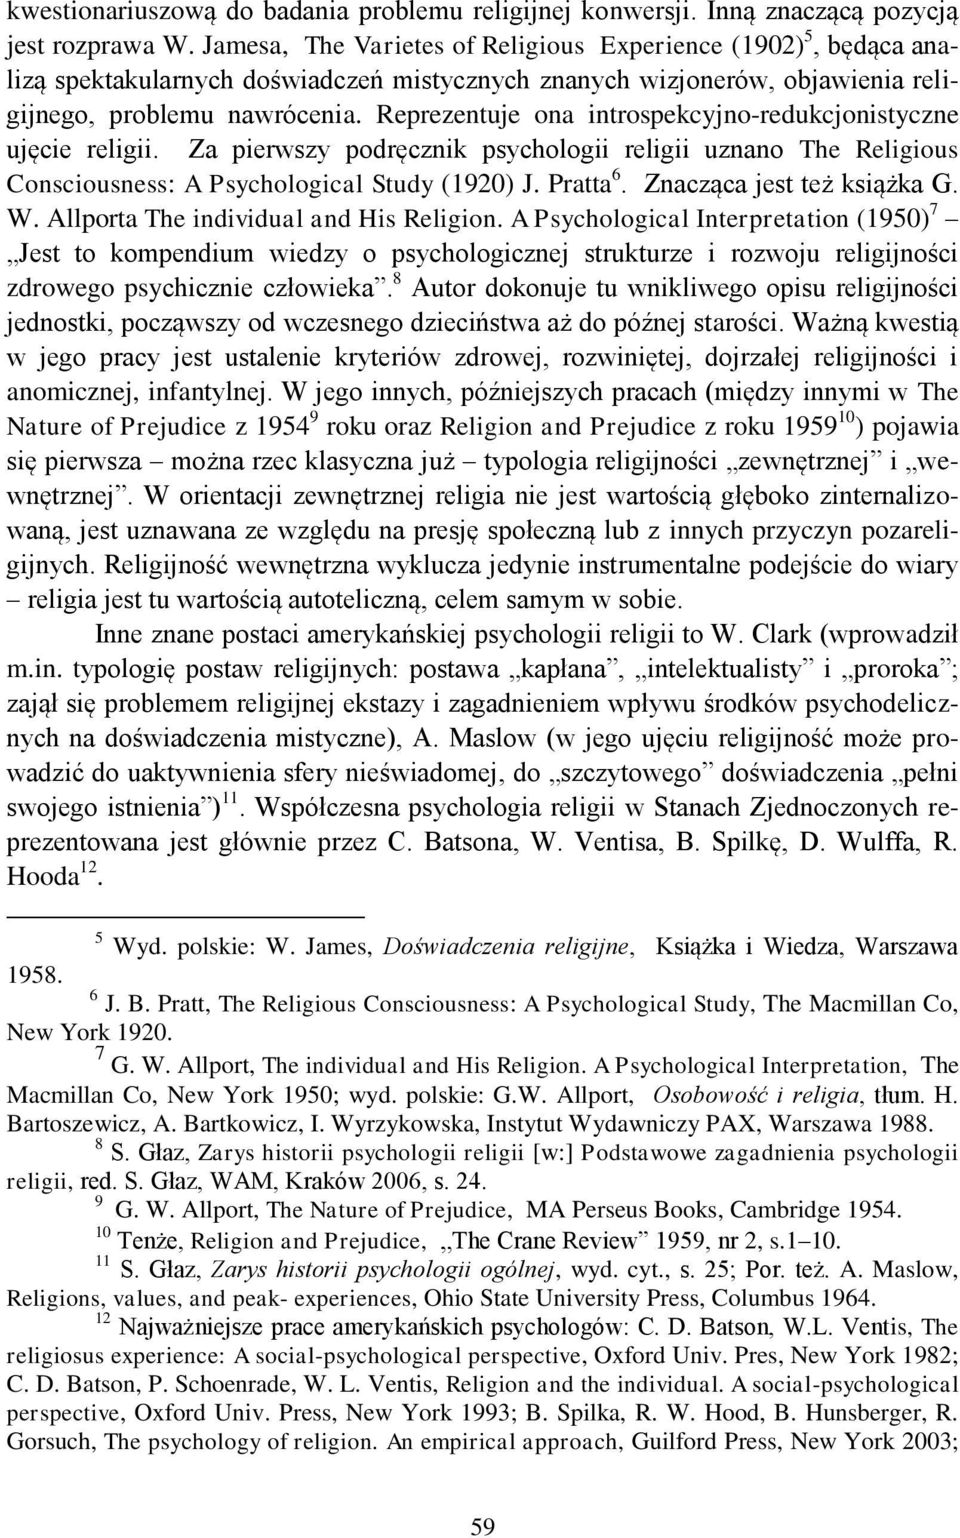 Reprezentuje ona introspekcyjno-redukcjonistyczne ujęcie religii. Za pierwszy podręcznik psychologii religii uznano The Religious Consciousness: A Psychological Study (1920) J. Pratta 6.